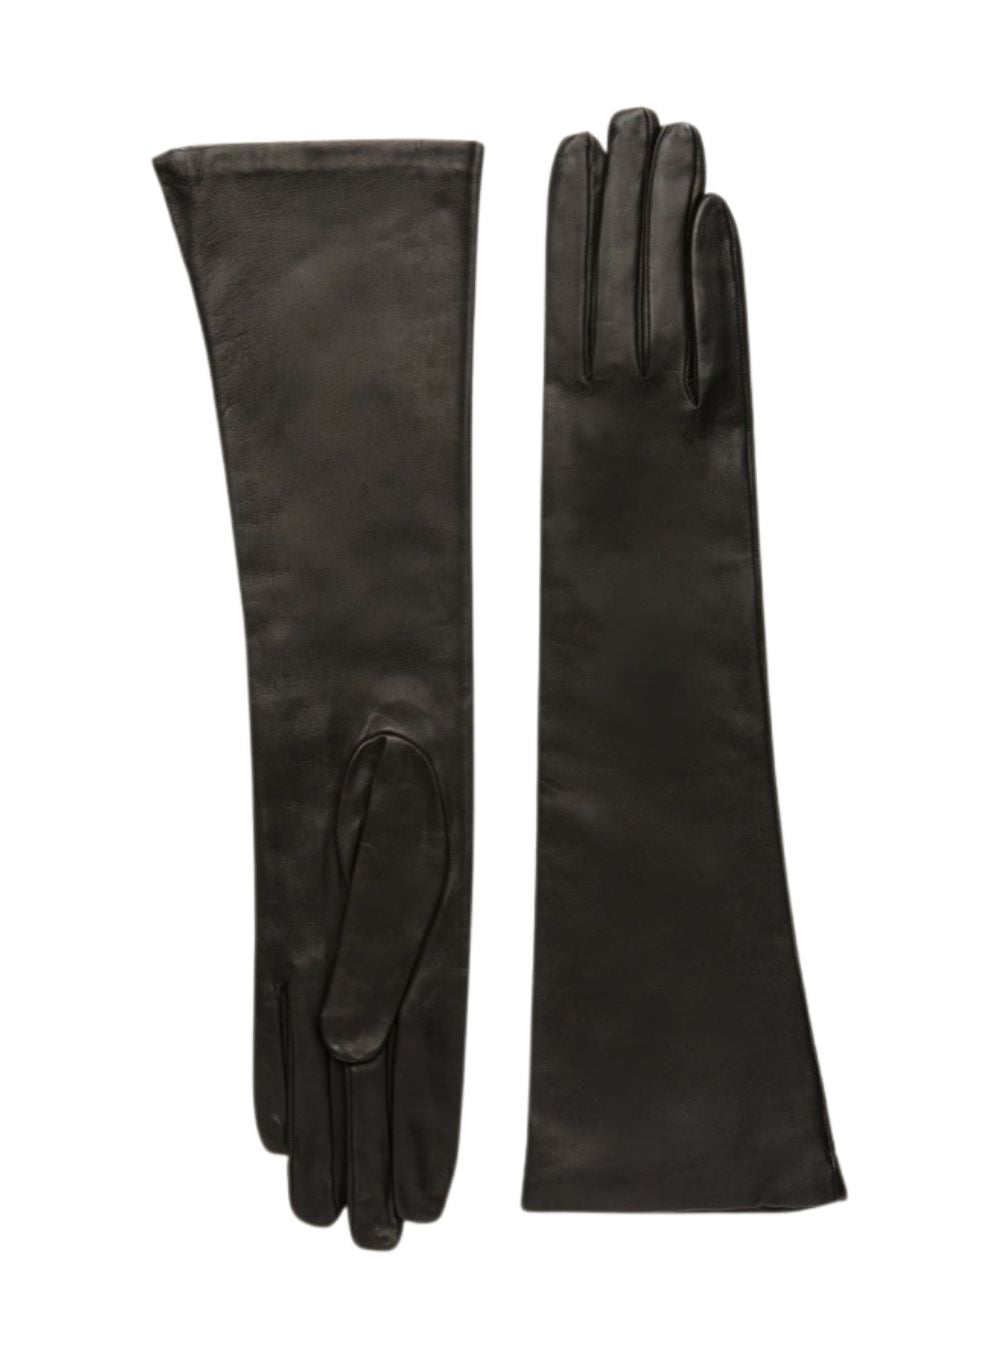 CAROLINA AMATO | Leather Elbow-Length Gloves